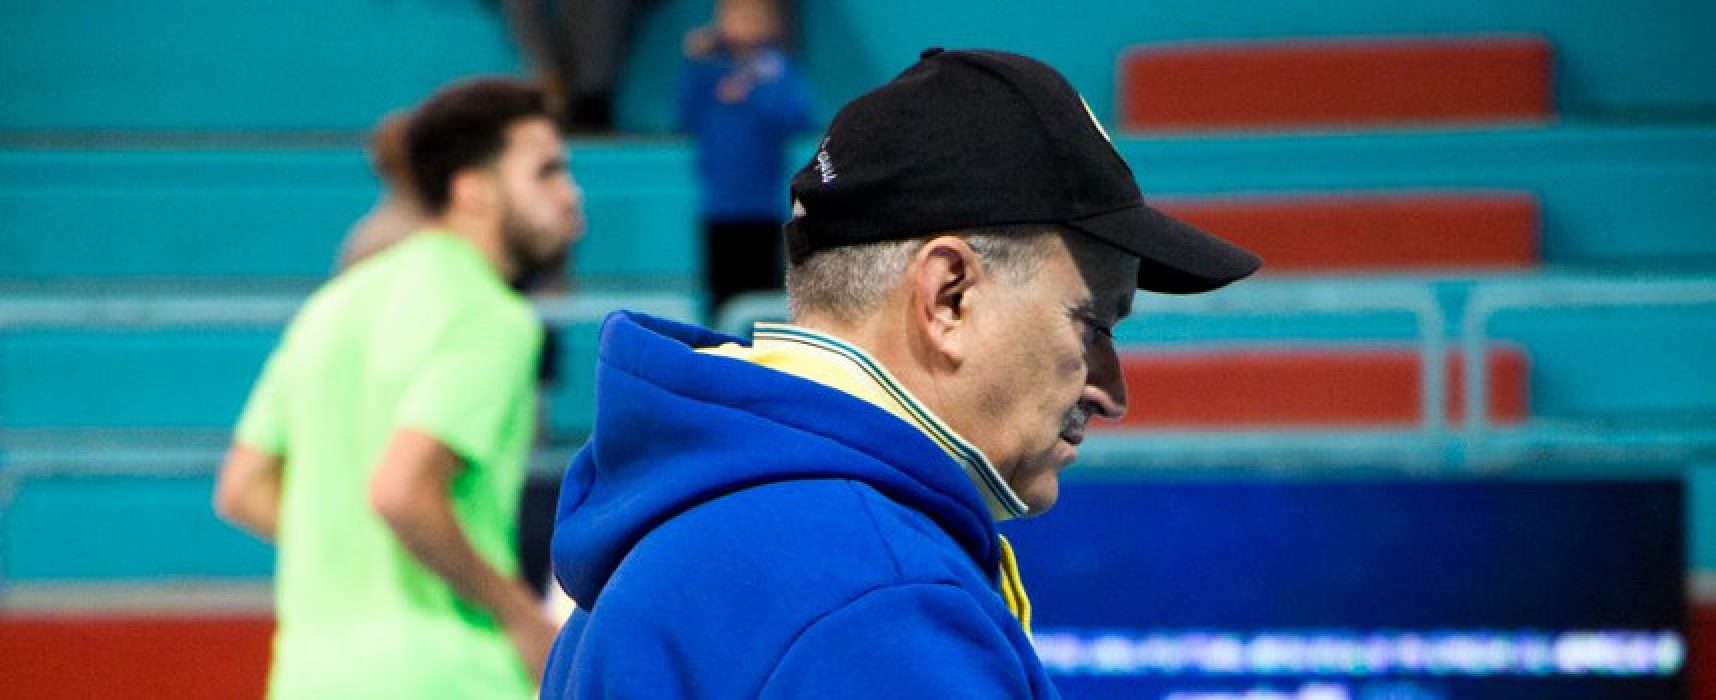 Ufficiale la separazione tra mister Capurso e Futsal Bisceglie